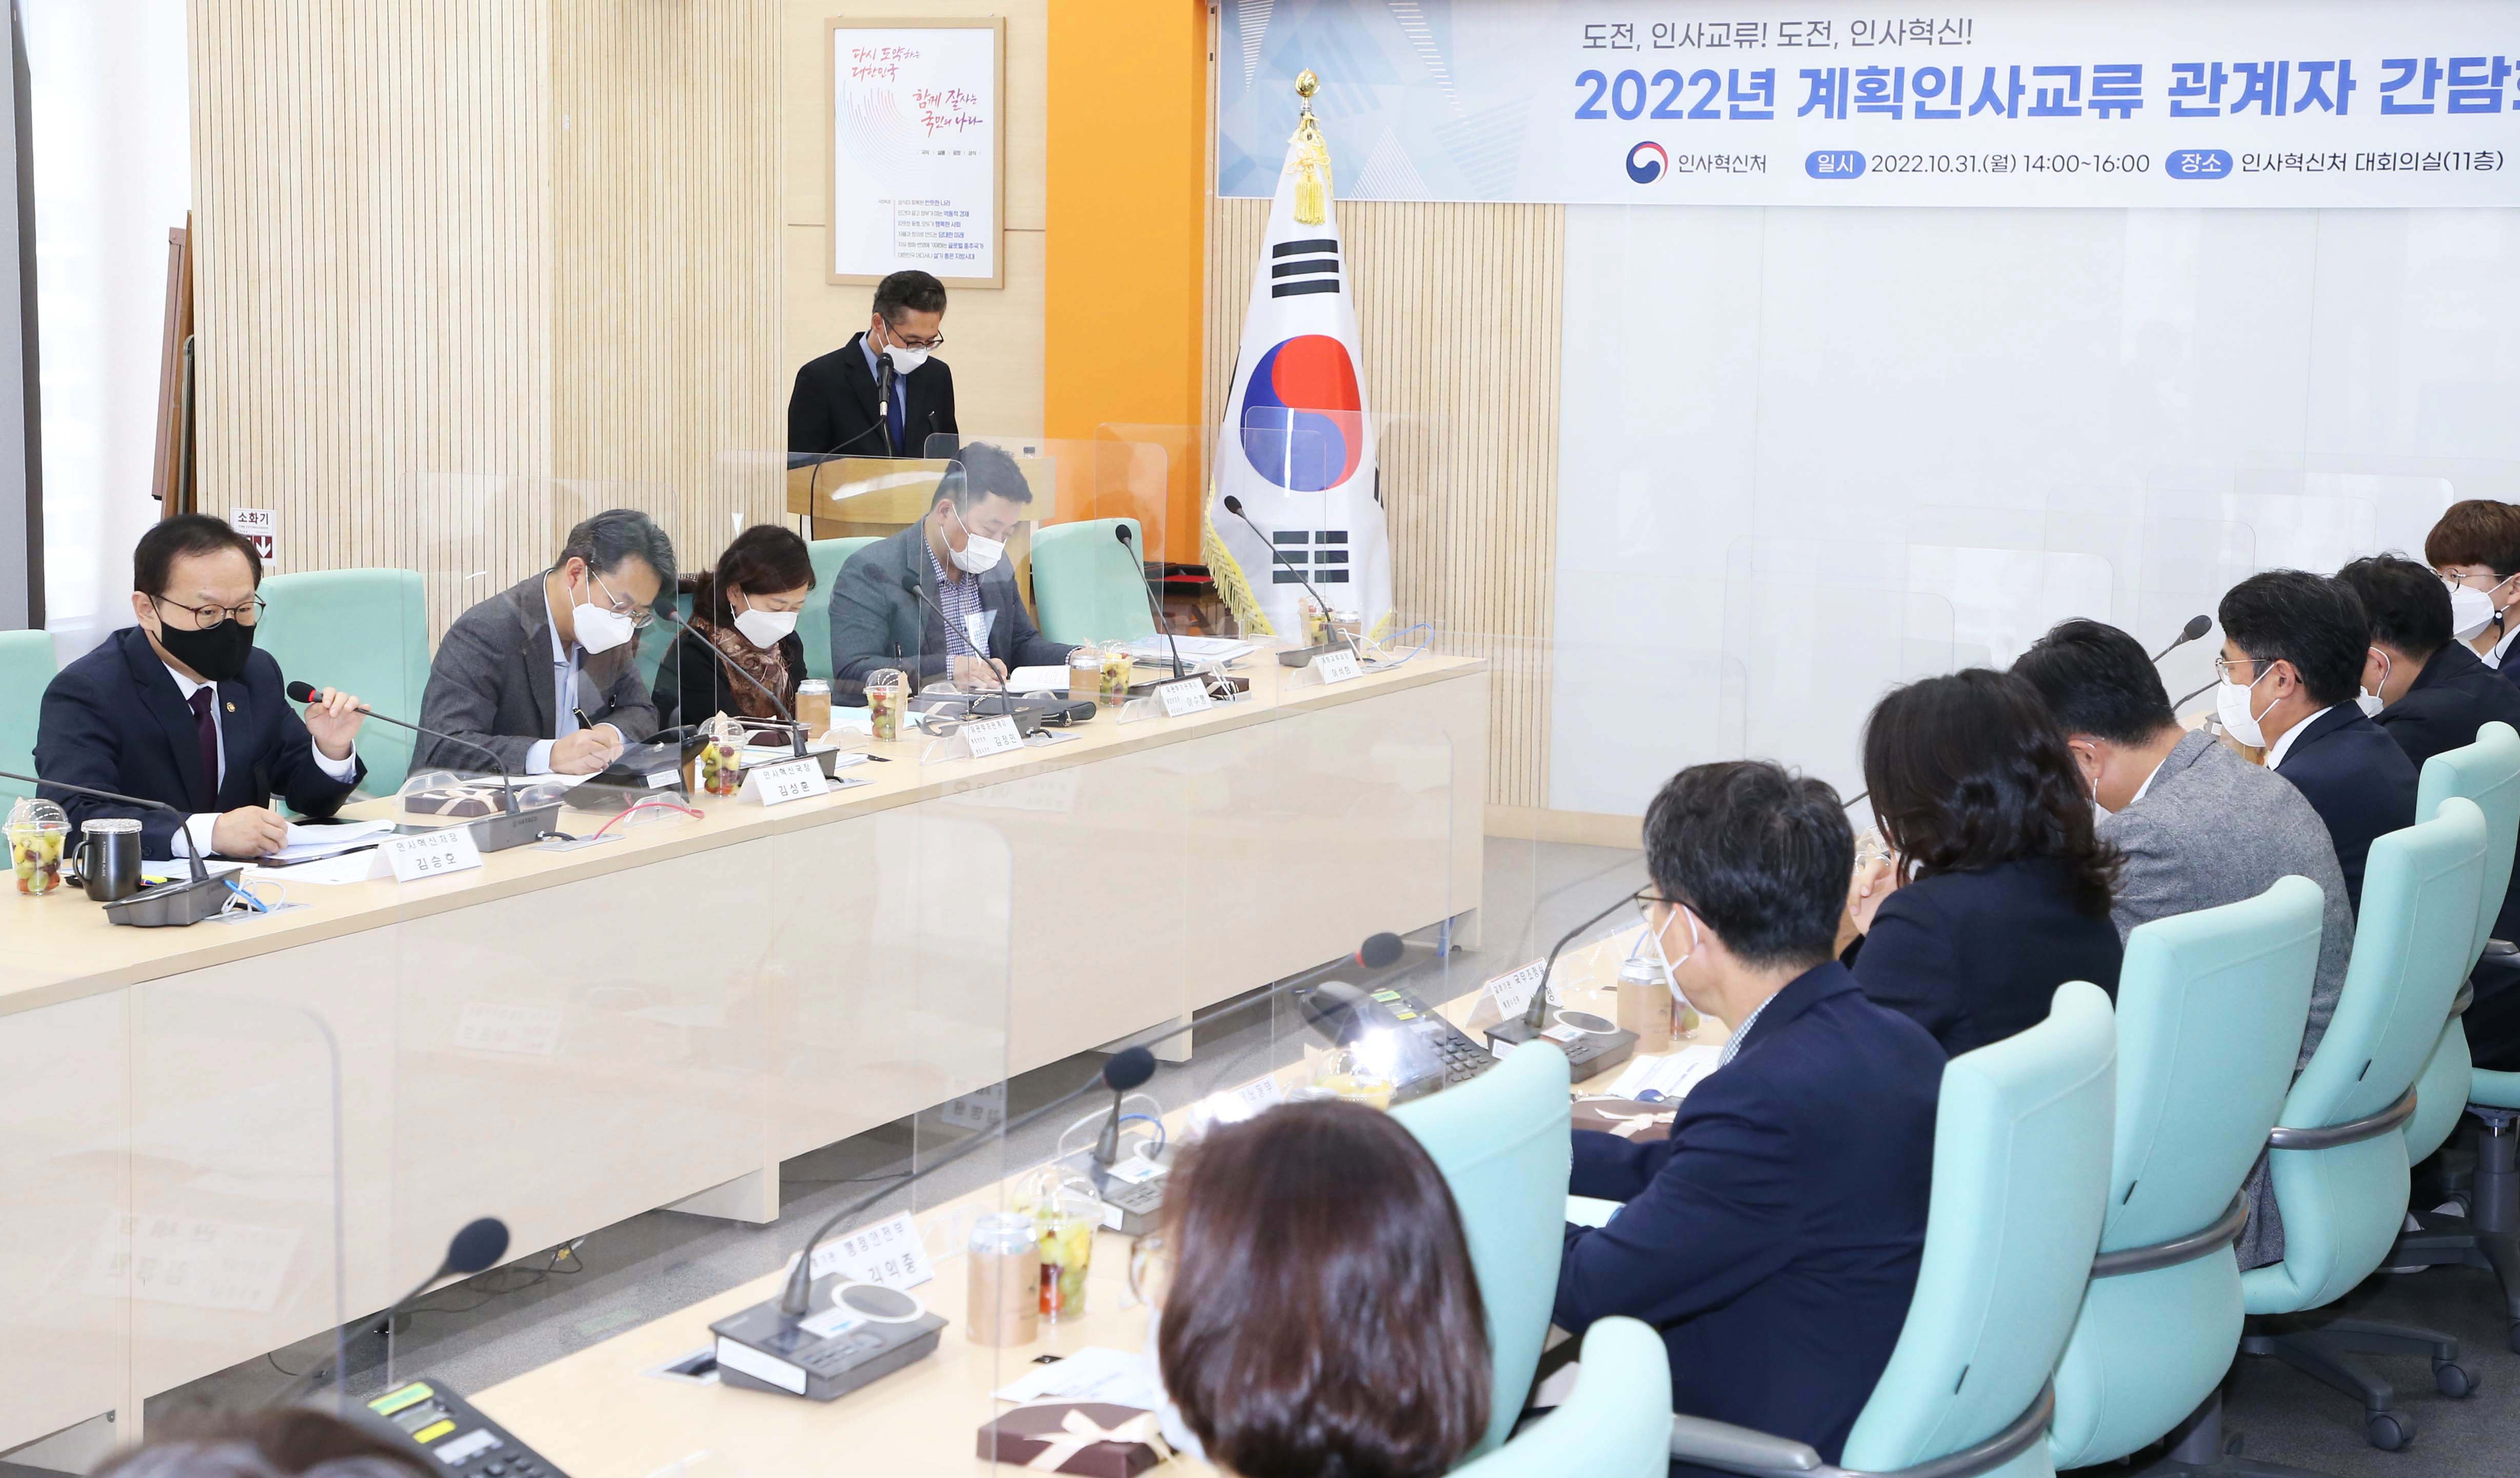 김승호 인사혁신처장이 10월 31일 세종시 인사처에서 열린 '2022년 계획인사교류 관계자 간담회'에 참석한 모습